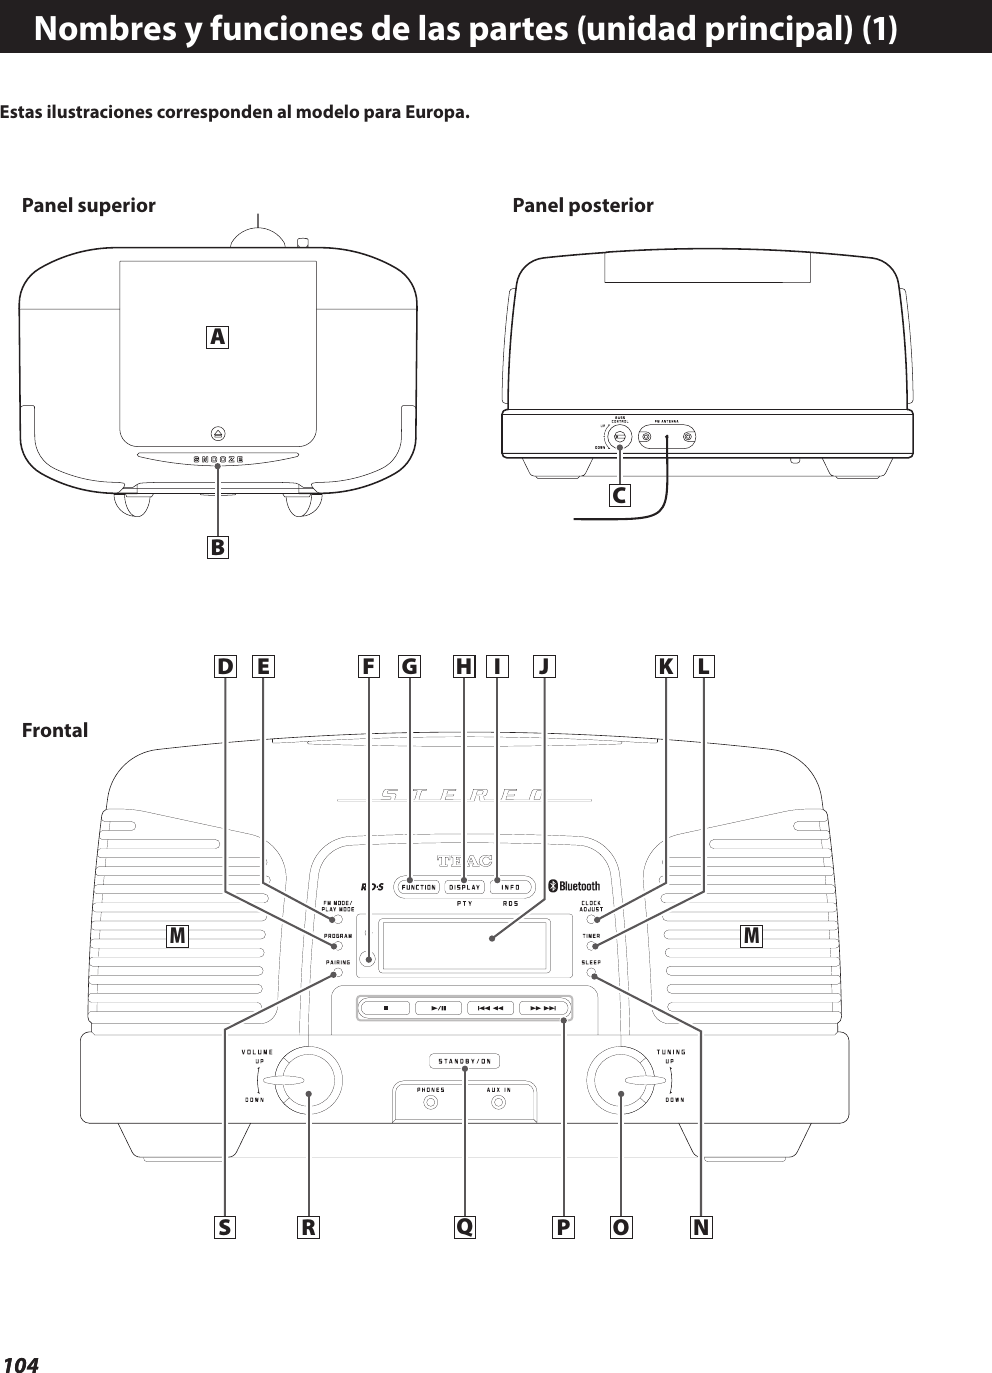 104104Nombres y funciones de las partes (unidad principal) (1)D G HES R QONMMI K LCABF JPPanel superior Panel posteriorFrontalEstas ilustraciones corresponden al modelo para Europa.